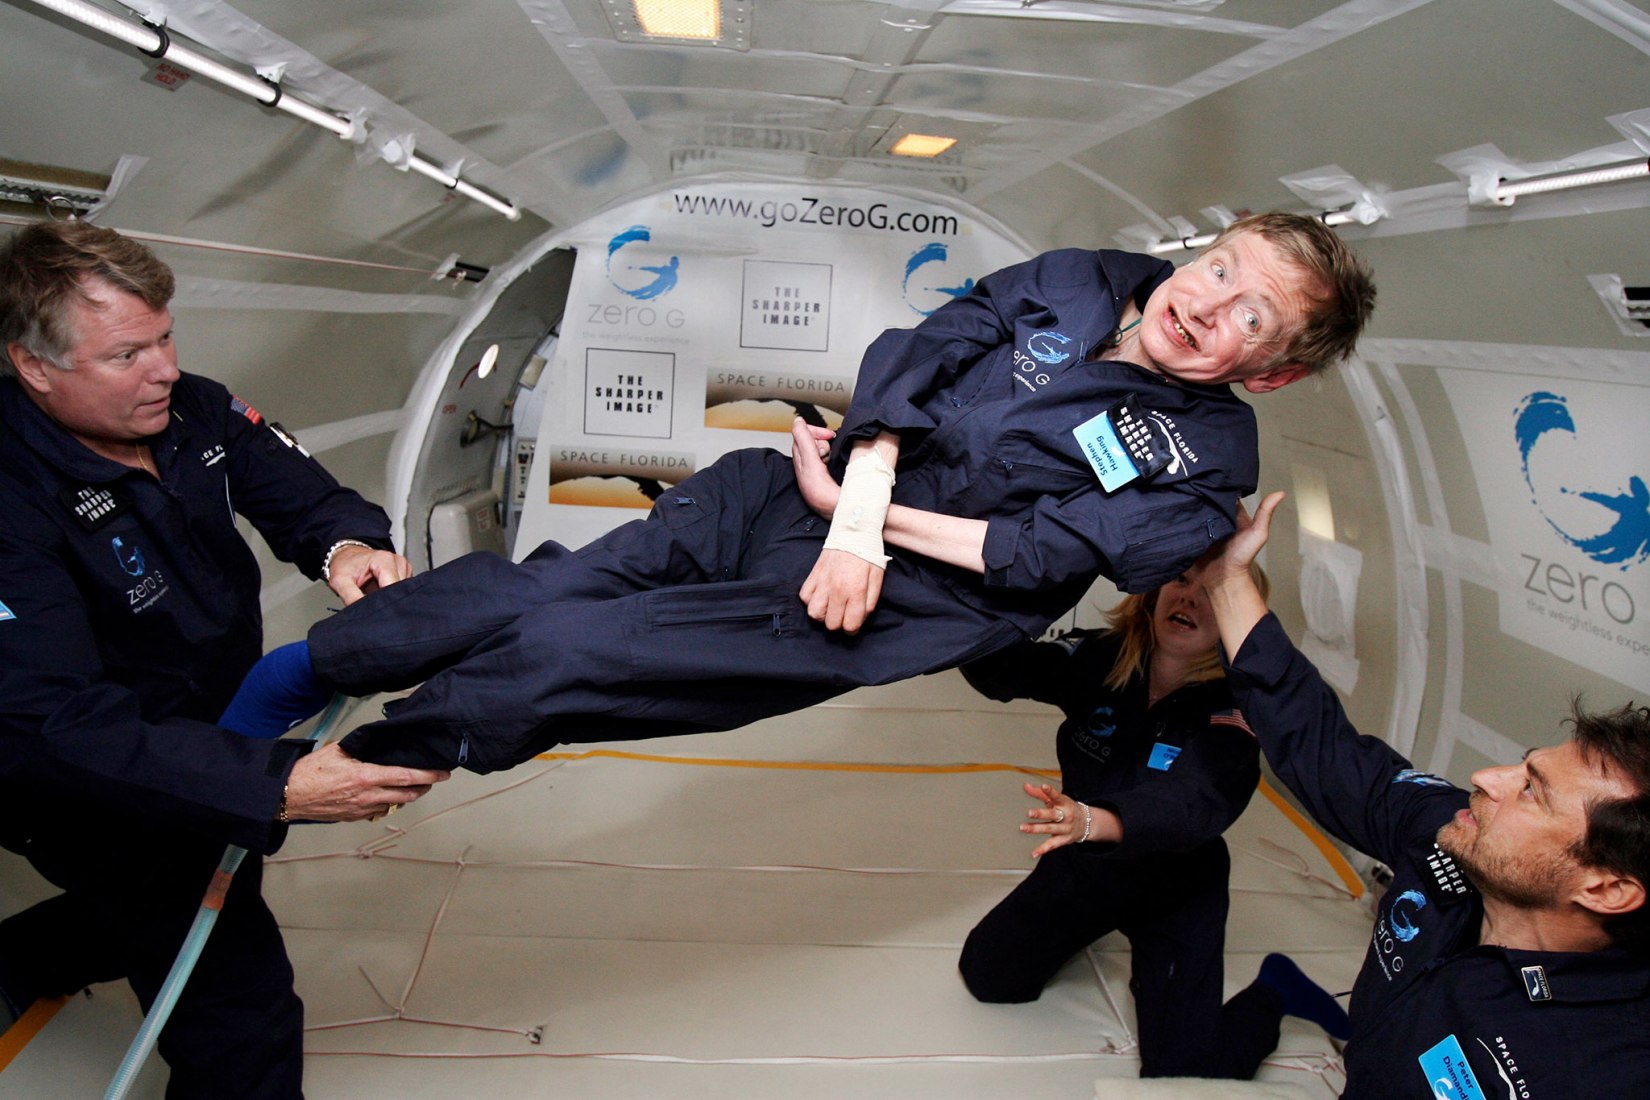 Stephen Hawking (centro) experimenta gravedad cero durante un vuelo a bordo de un avión Boeing 727 modificado, propiedad de la Zero Gravity Corporation. Hawking está siendo girado en el aire por Peter Diamandis (derecha), el astronauta Byron Lichtenberg (izquierda) y Nicola O'Brien, la enfermera y ayudante de Hawking. Fotografía por Jim Campbell/Aero-News Network 